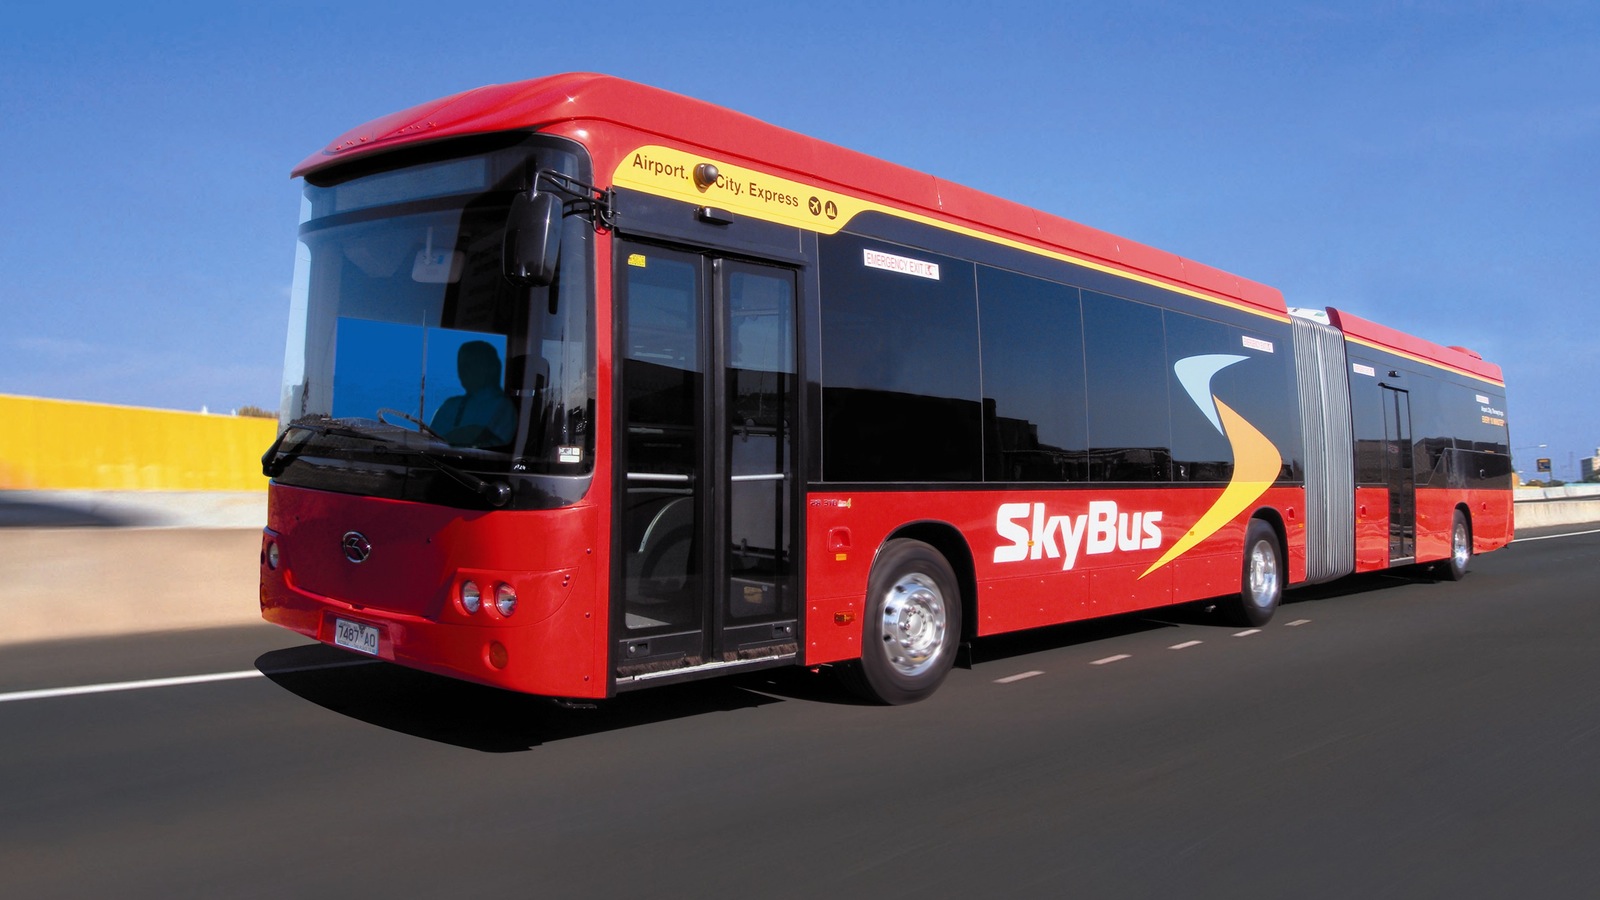 Skybus - australia.SHOWBUS.com BUS IMAGE GALLERY - Melbourne Skybus